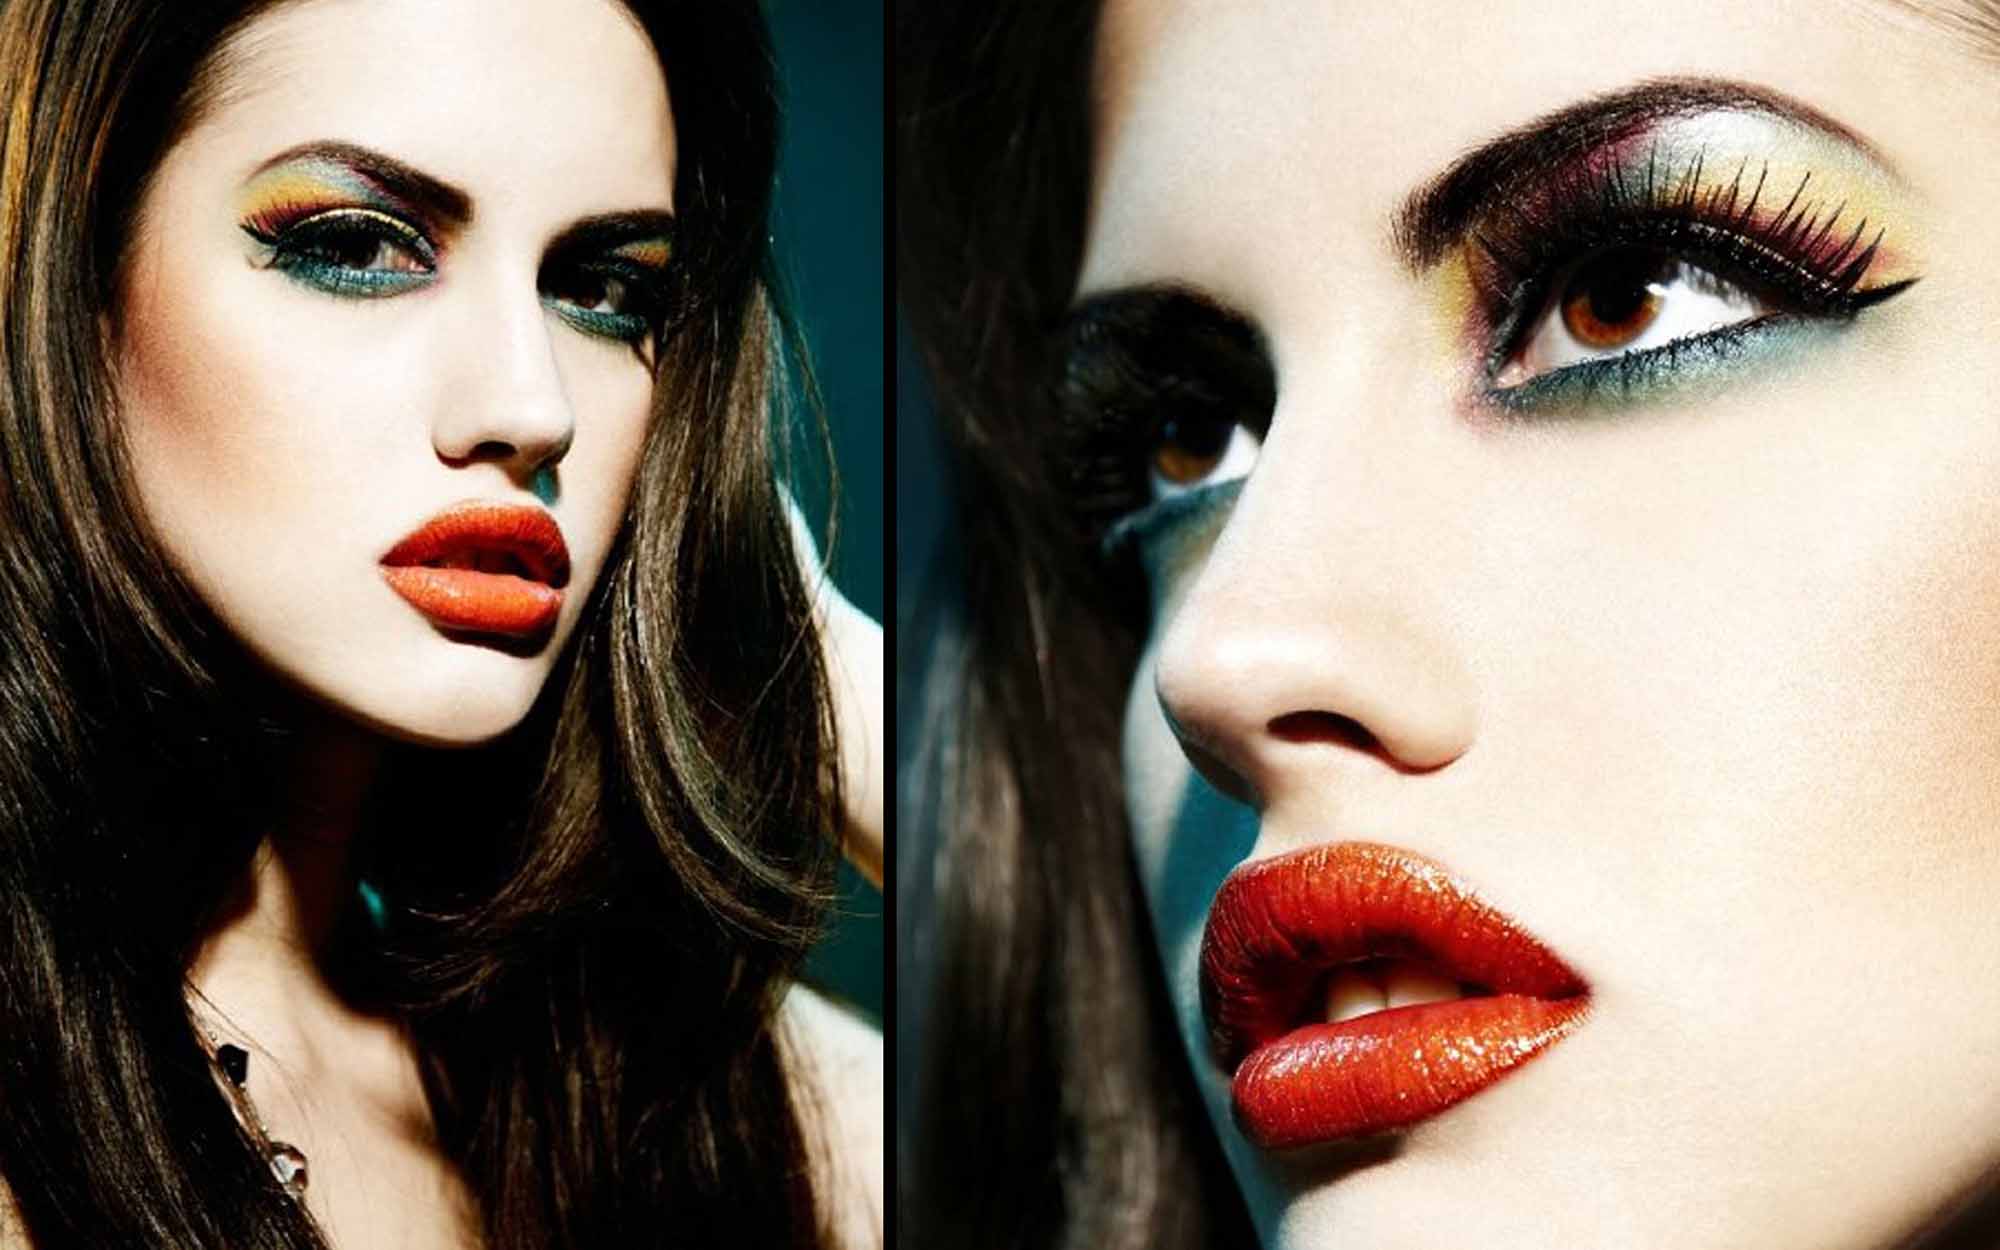 http://web-rockstars.com/bellezza/wp-content/uploads/2013/09/makeup004.jpg